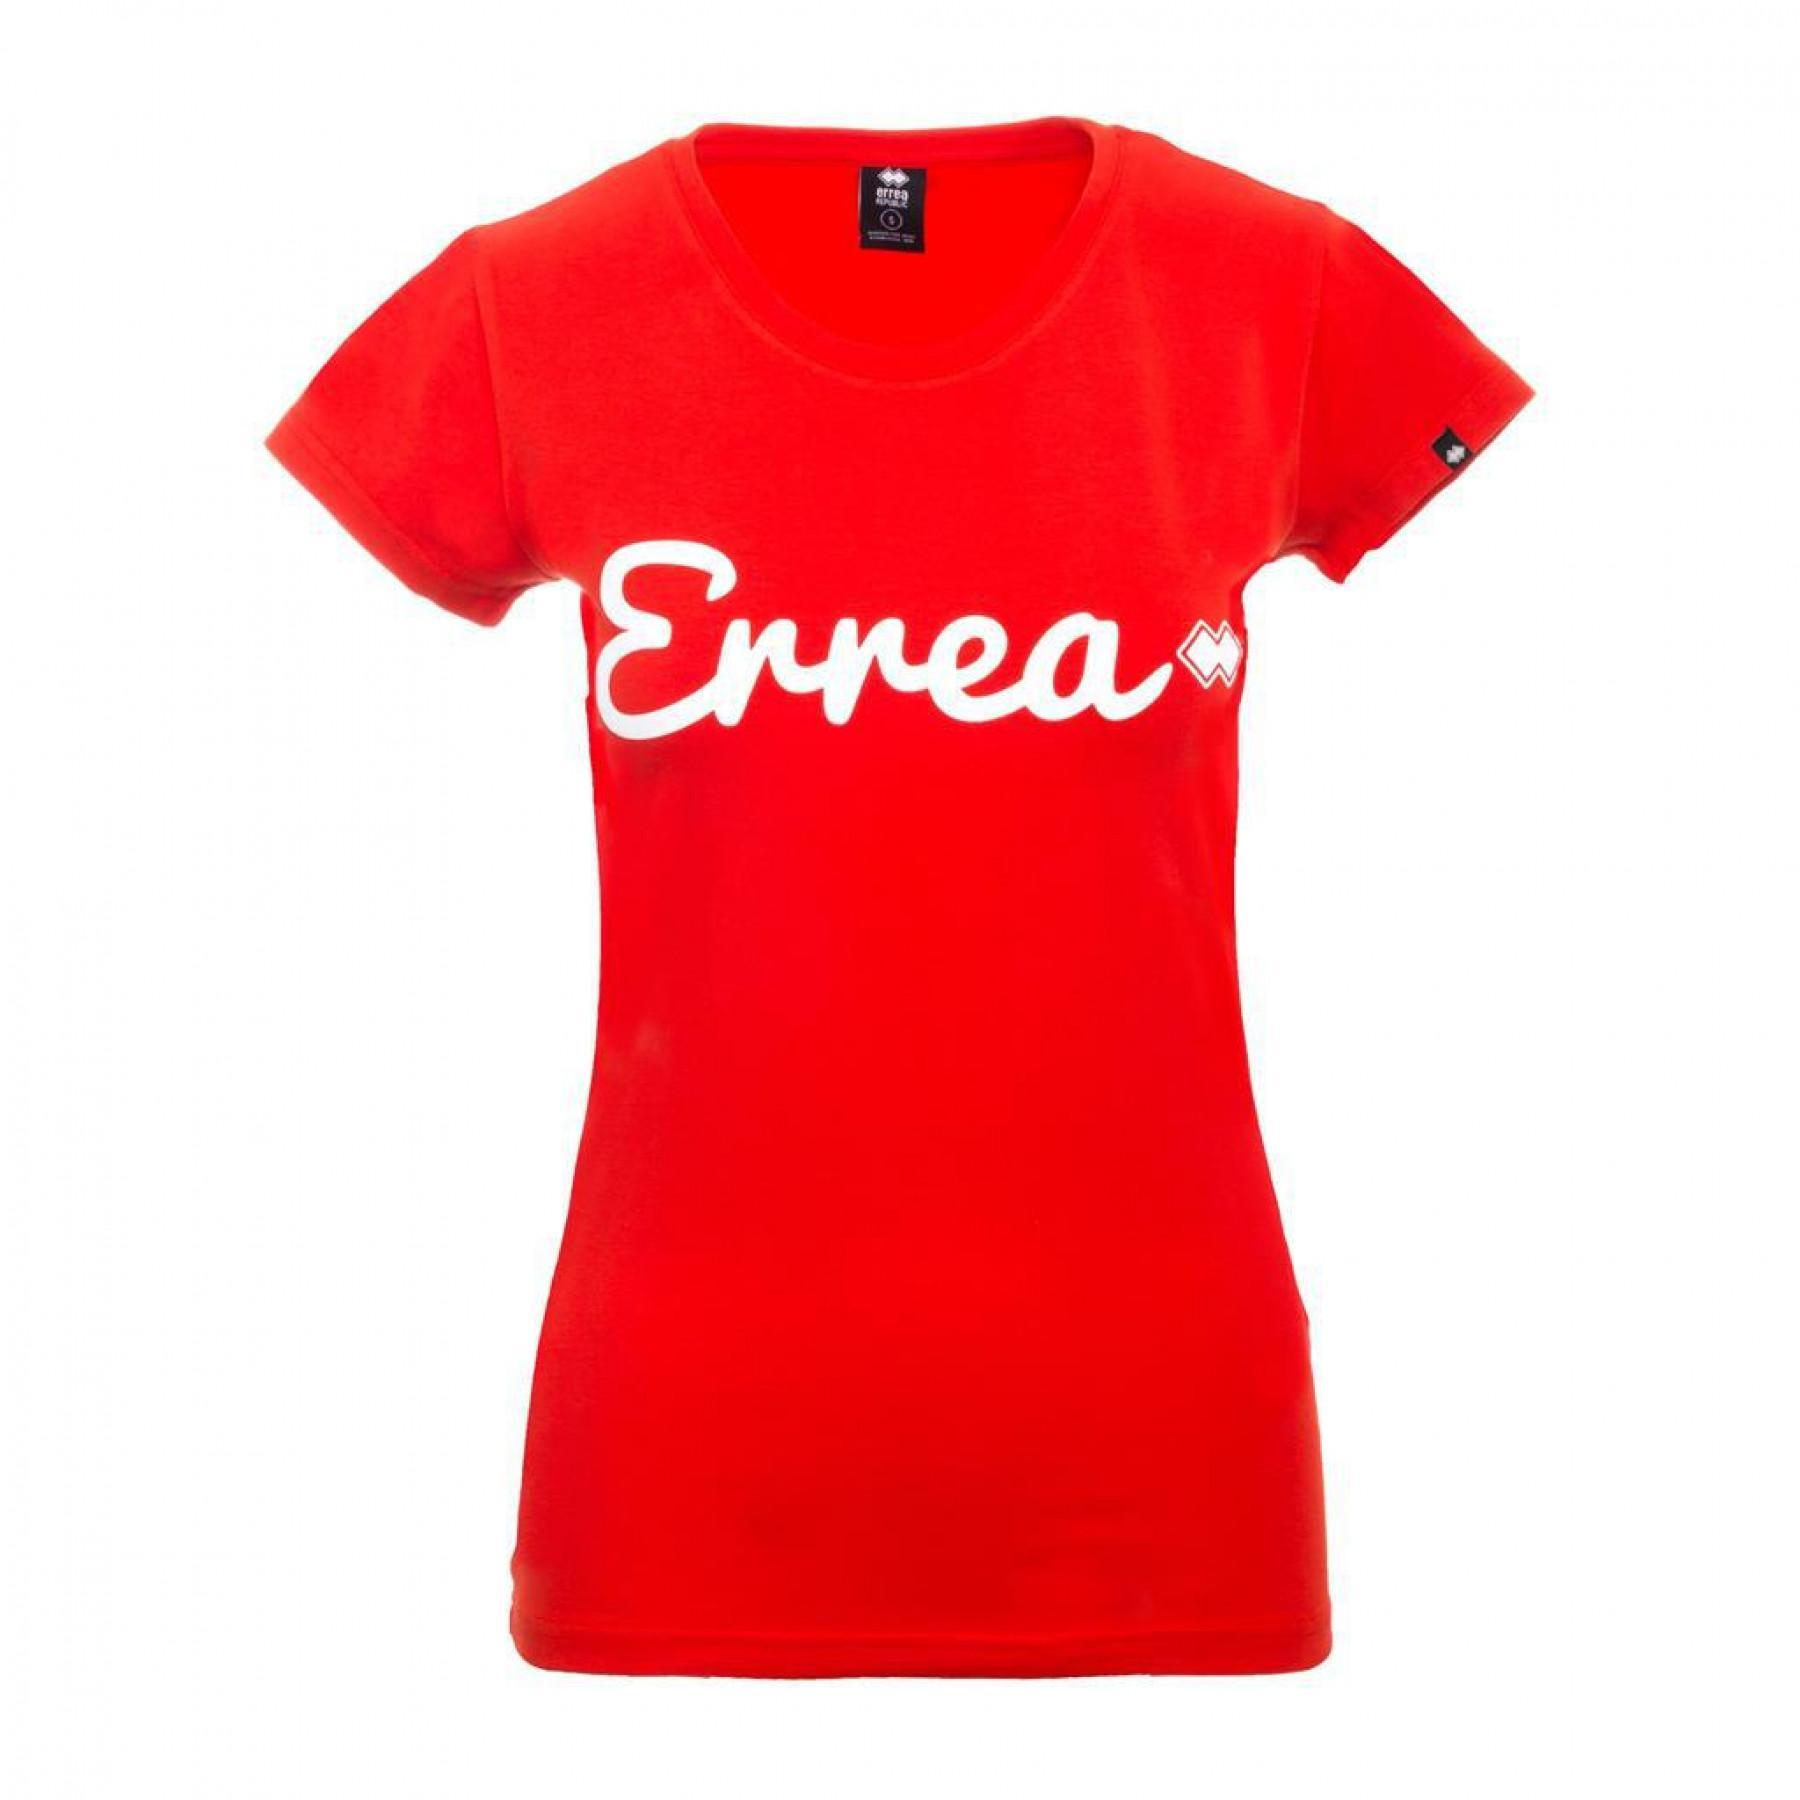 Women's T-shirt Errea trend